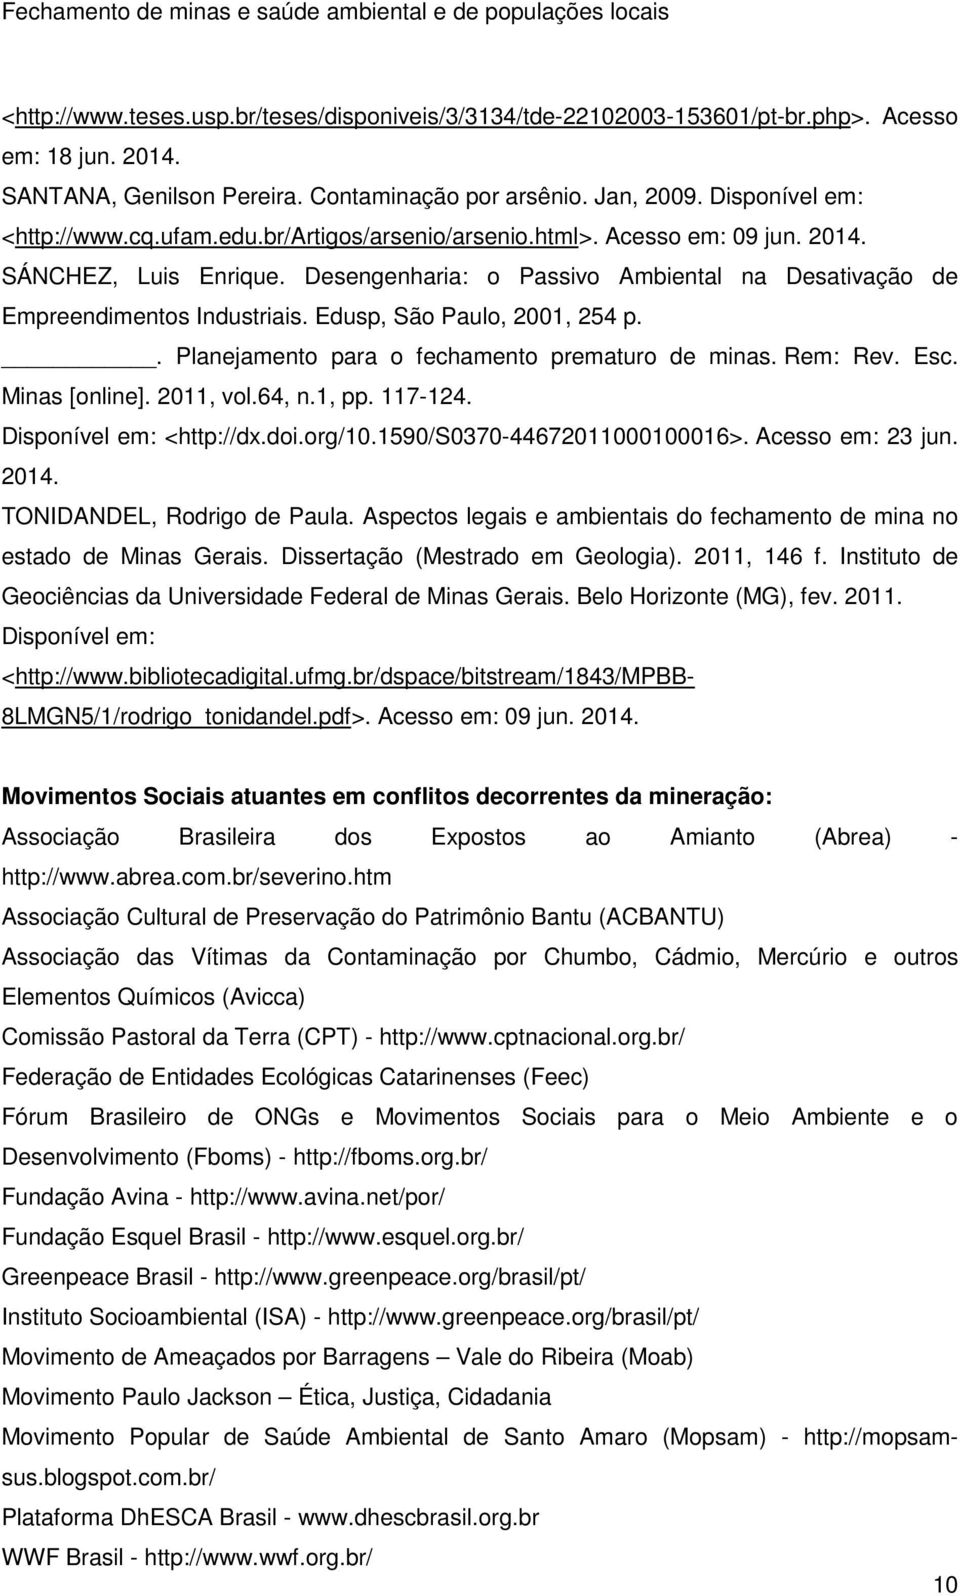 Edusp, São Paulo, 2001, 254 p.. Planejamento para o fechamento prematuro de minas. Rem: Rev. Esc. Minas [online]. 2011, vol.64, n.1, pp. 117-124. Disponível em: <http://dx.doi.org/10.